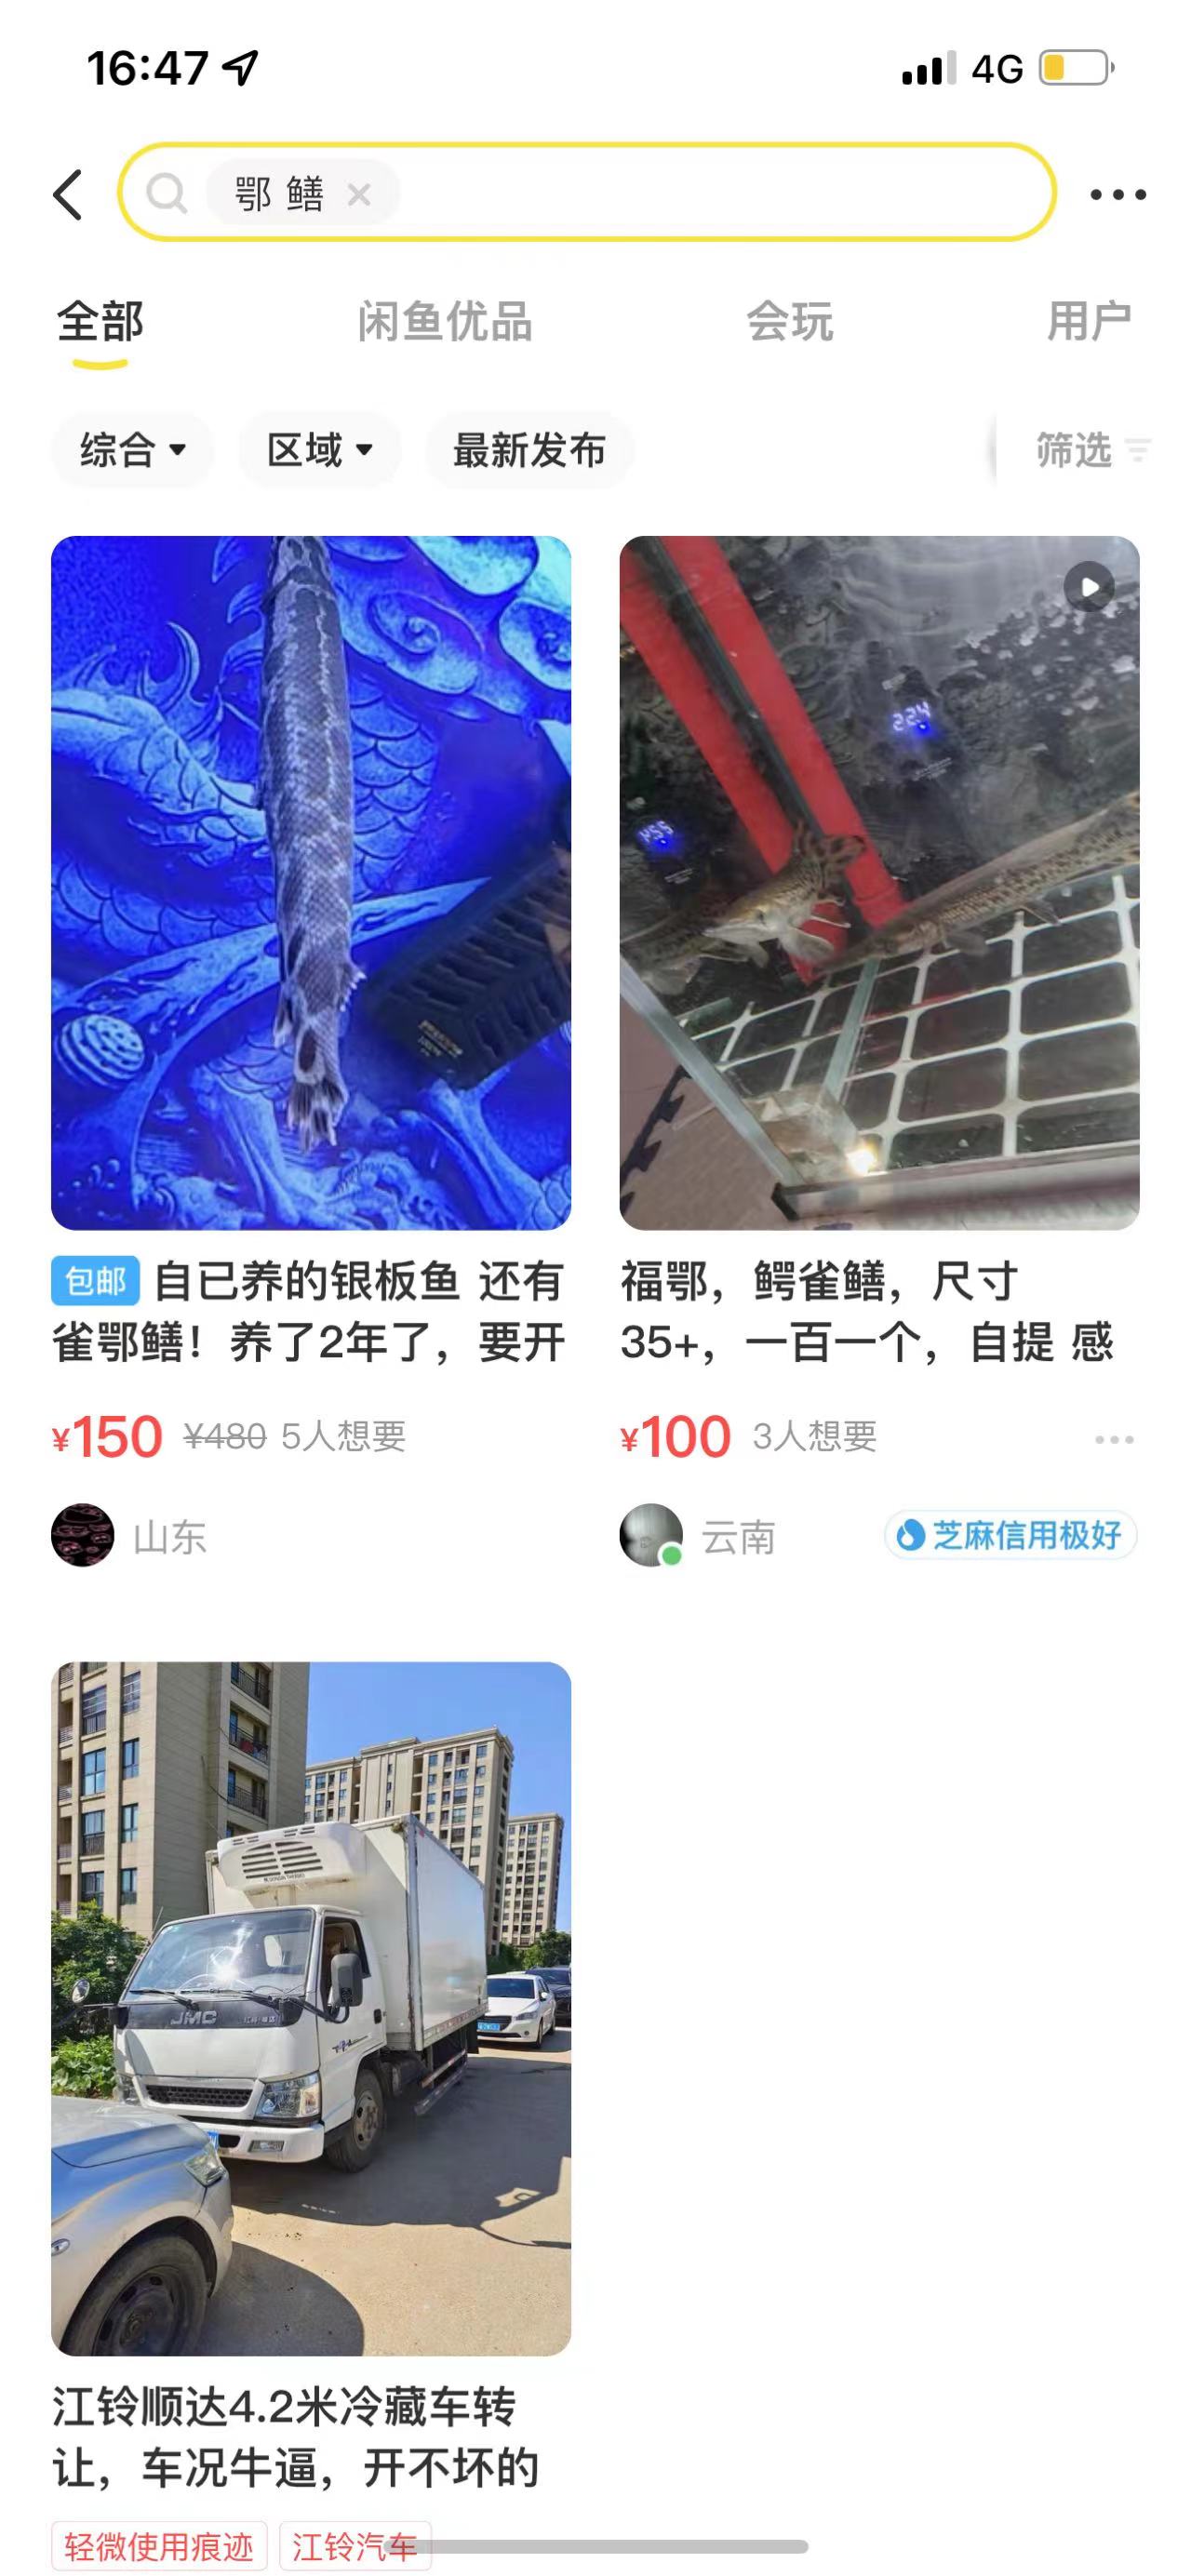 闲鱼平台出售的鳄雀鳝。